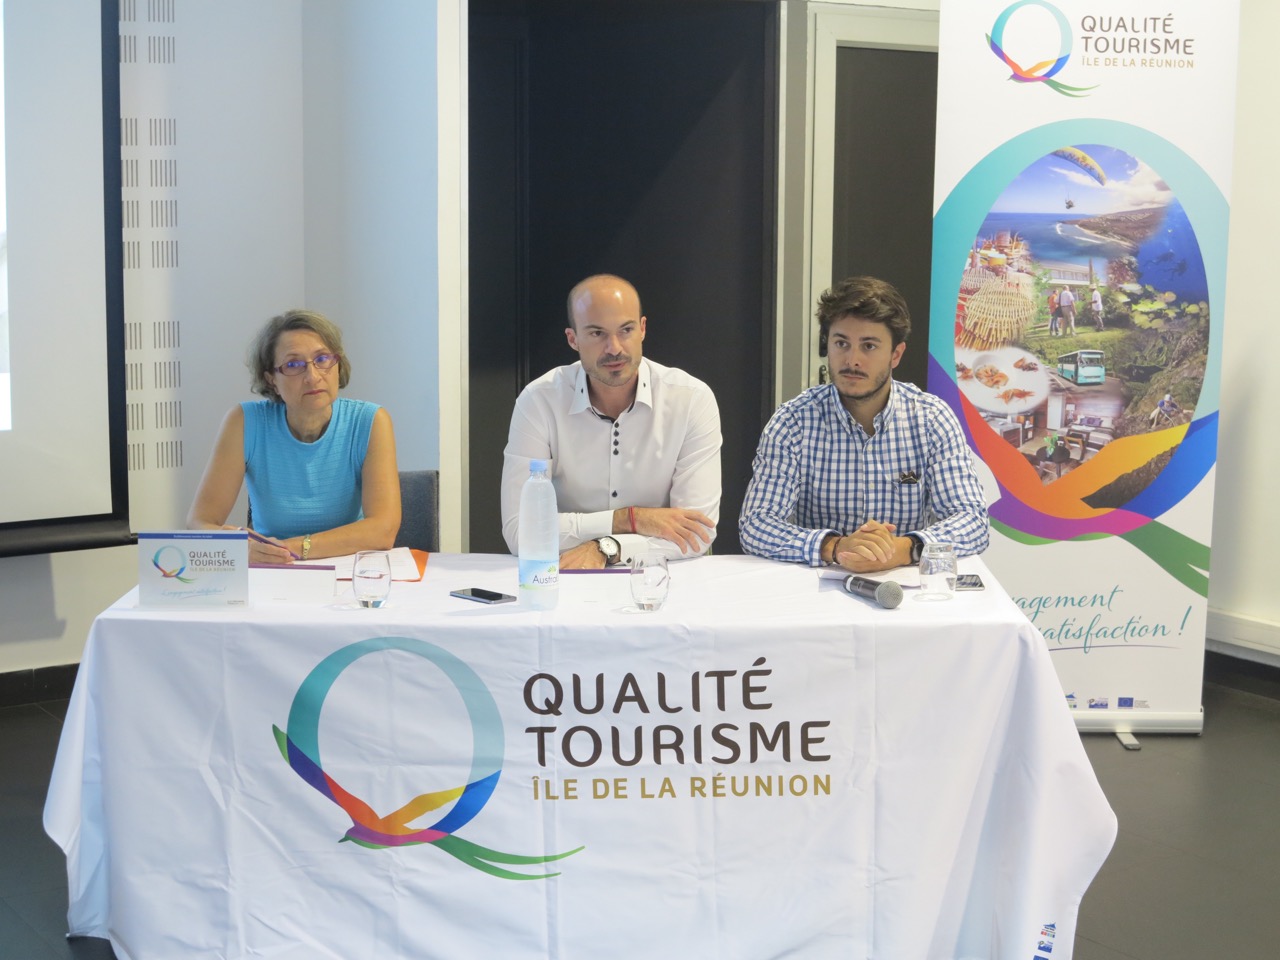 L'IRT veut séduire les Réunionnais à travers son label Qualité Tourisme Île de la Réunion